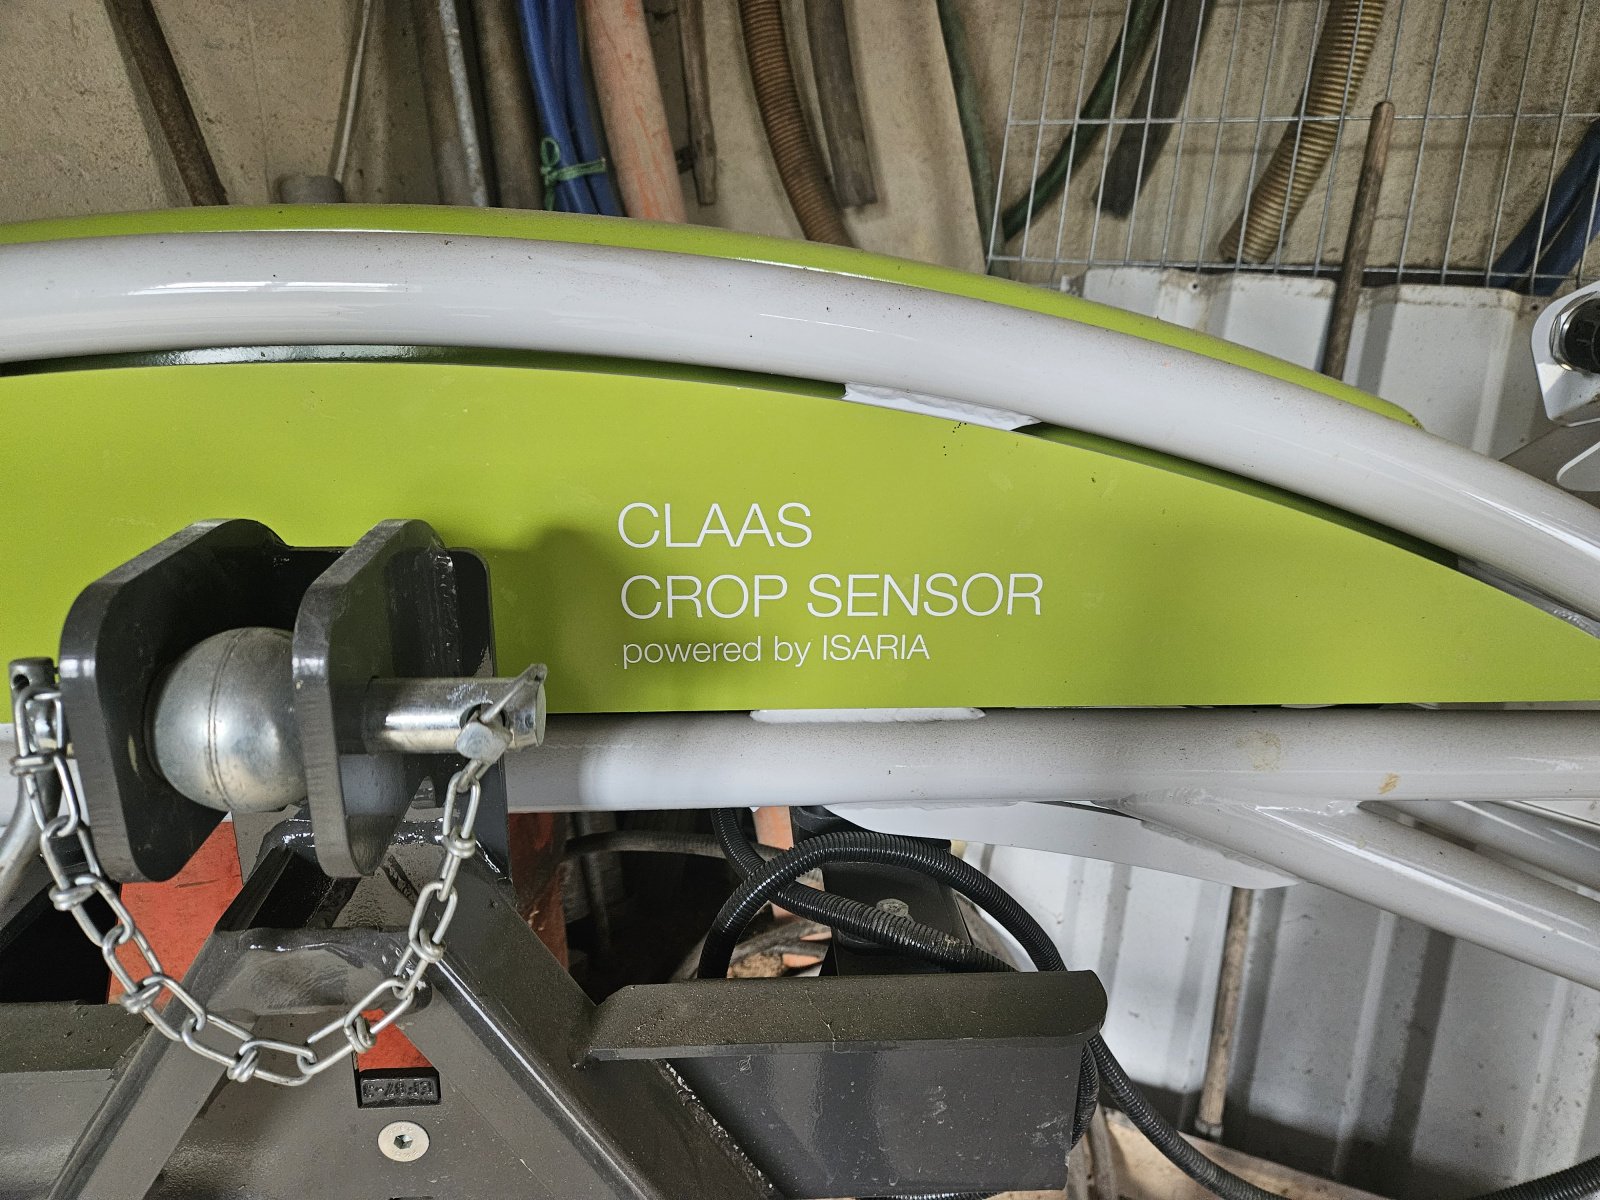 Düngungs-System des Typs CLAAS Crop Sensor, Gebrauchtmaschine in Meeder (Bild 2)